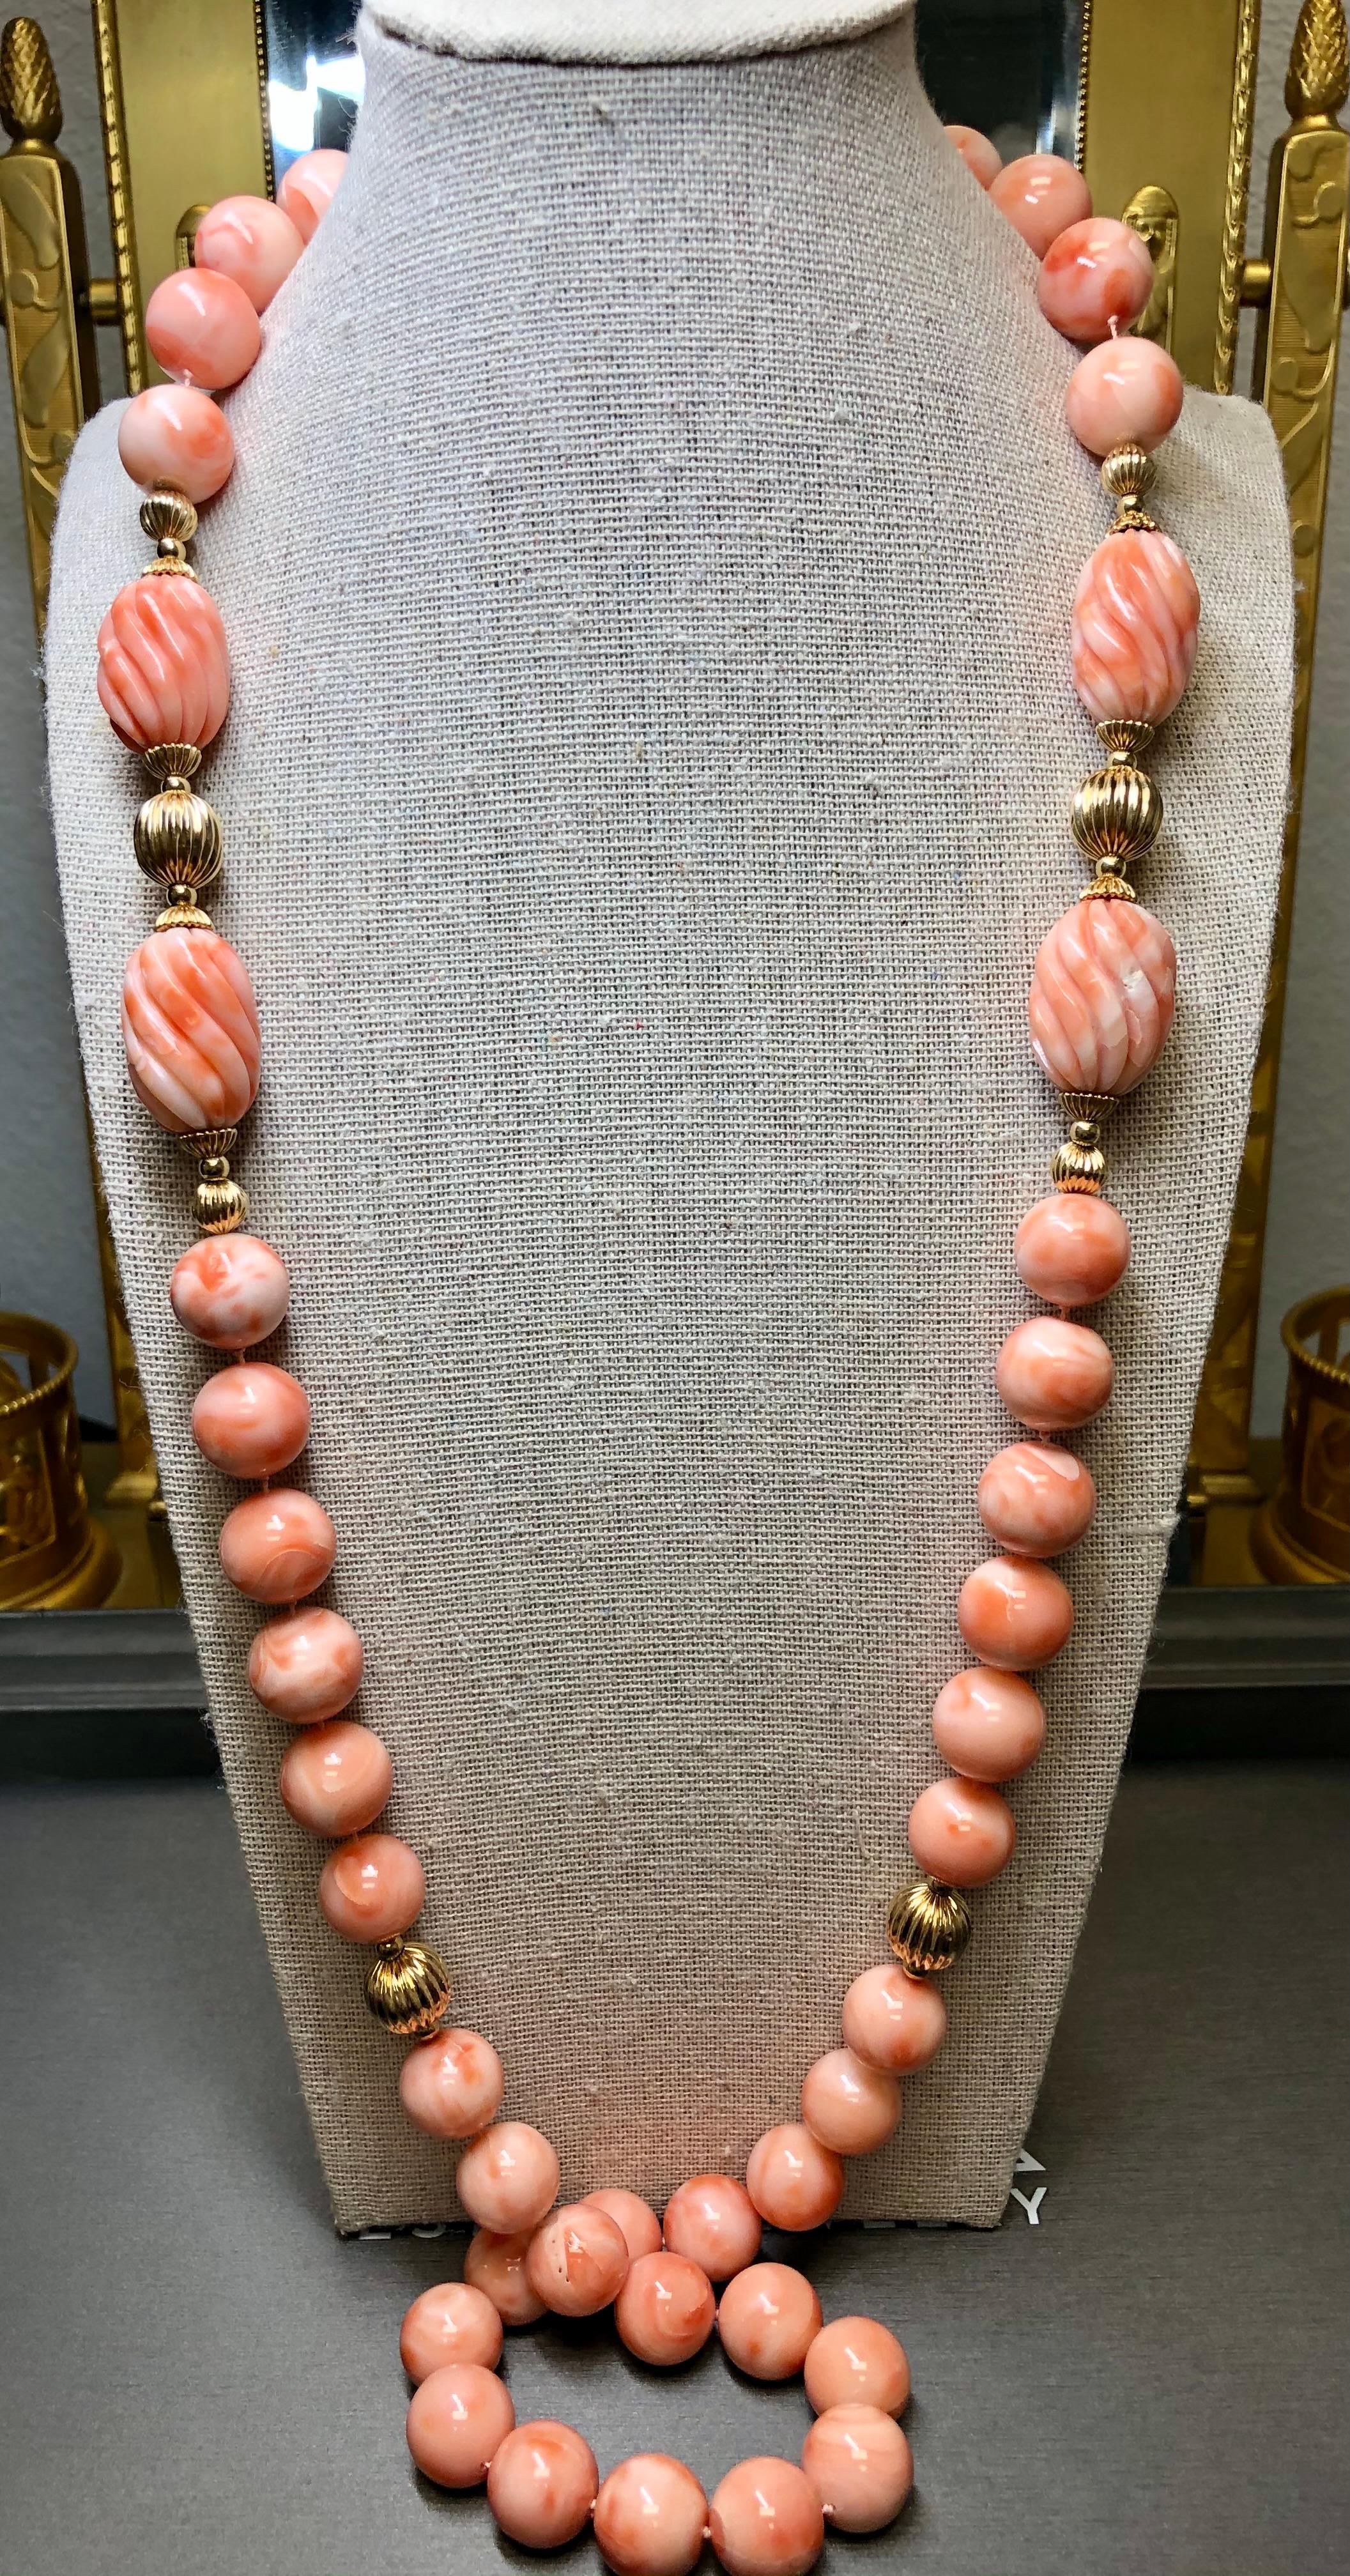 
Un incroyable collier en corail CIRCA des années 1960... et nous n'en avons jamais vu d'autre comme celui-ci. Il est enfilé avec de magnifiques perles de corail rose et blanc tourbillonnantes et des tubes de corail sculptés de manière complexe. Les